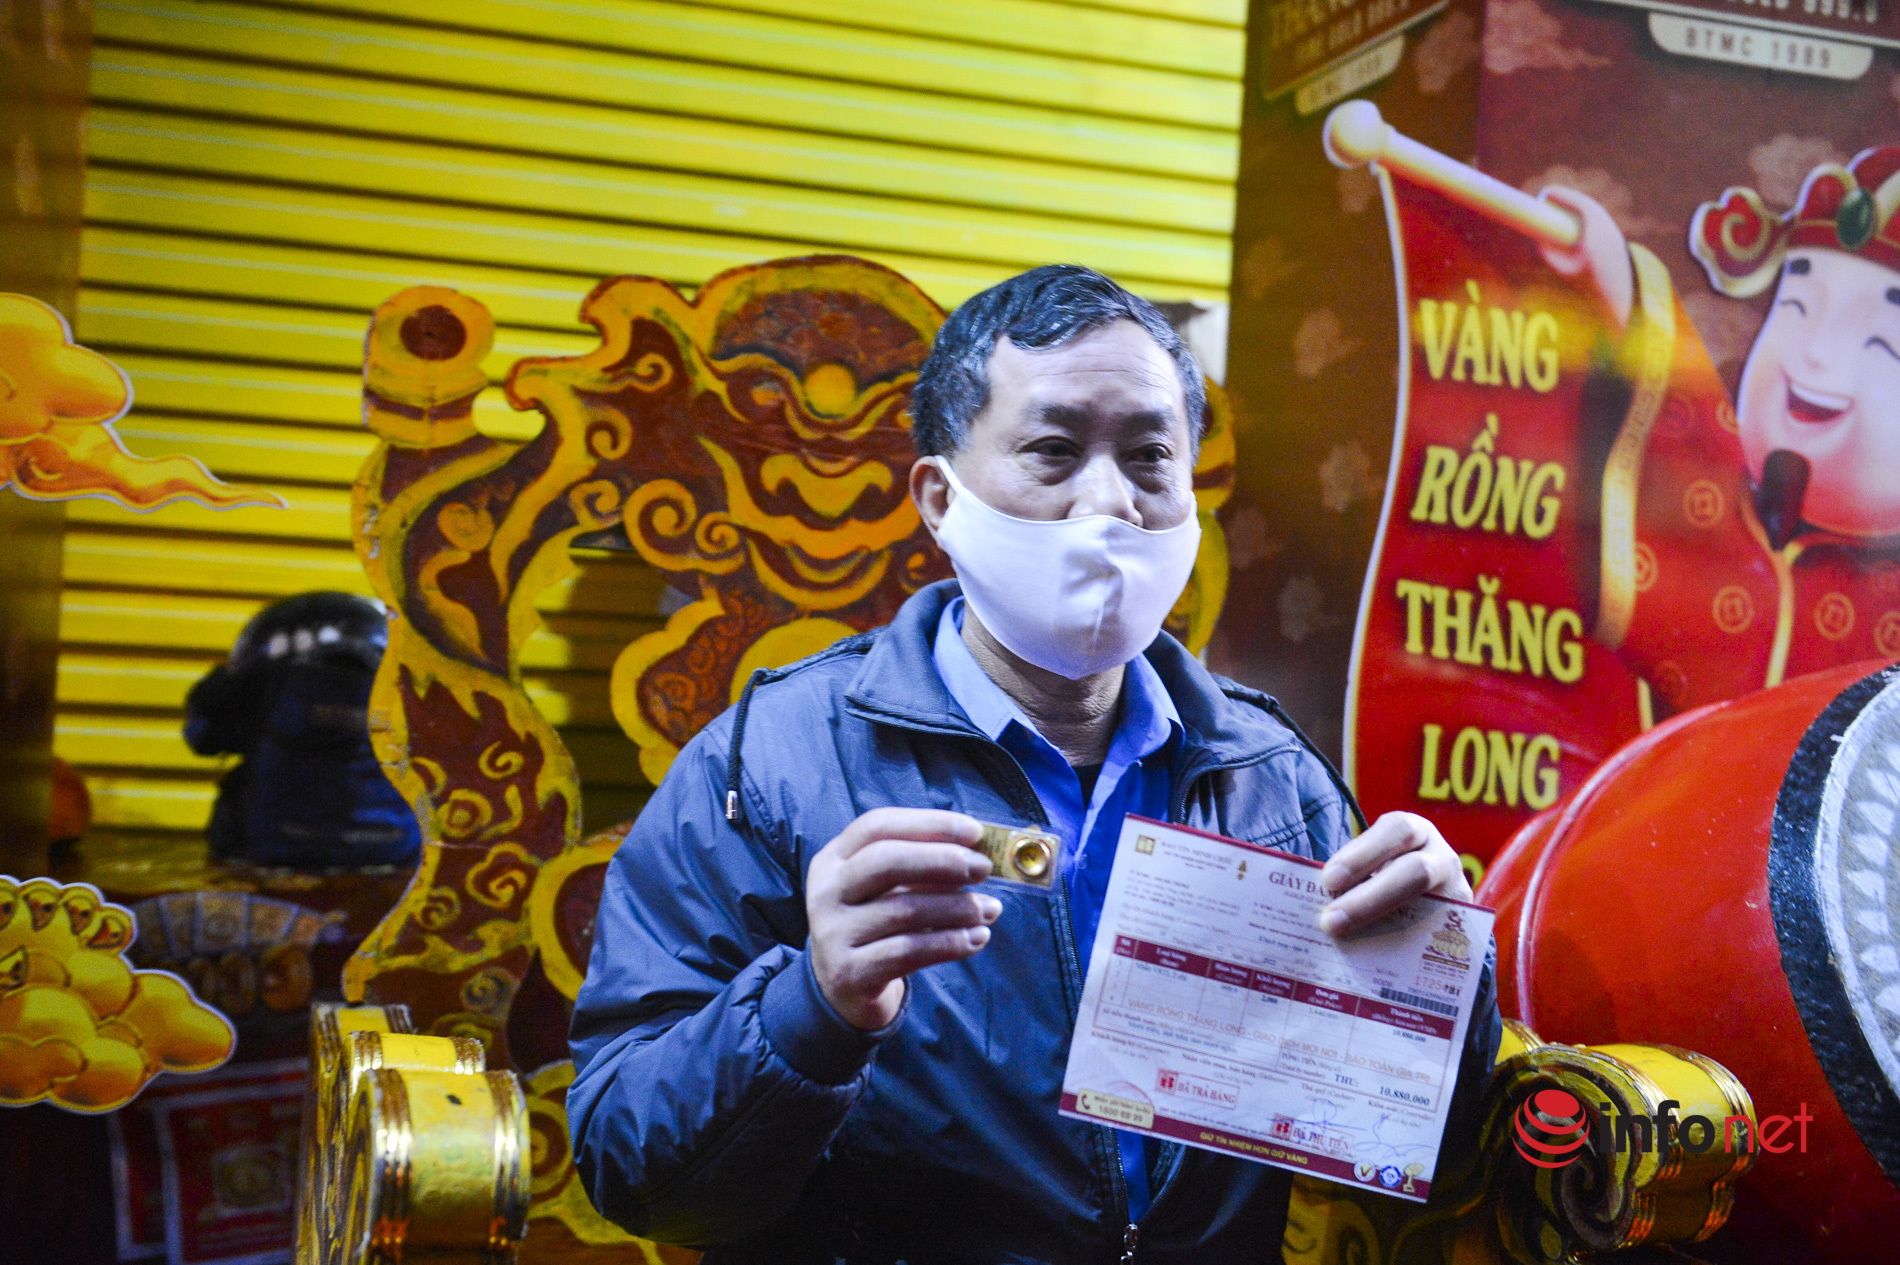 Mua vàng vía Thần Tài ở Hà Nội: Khách đội mưa rét xếp hàng từ rạng sáng mua vài chỉ cầu may